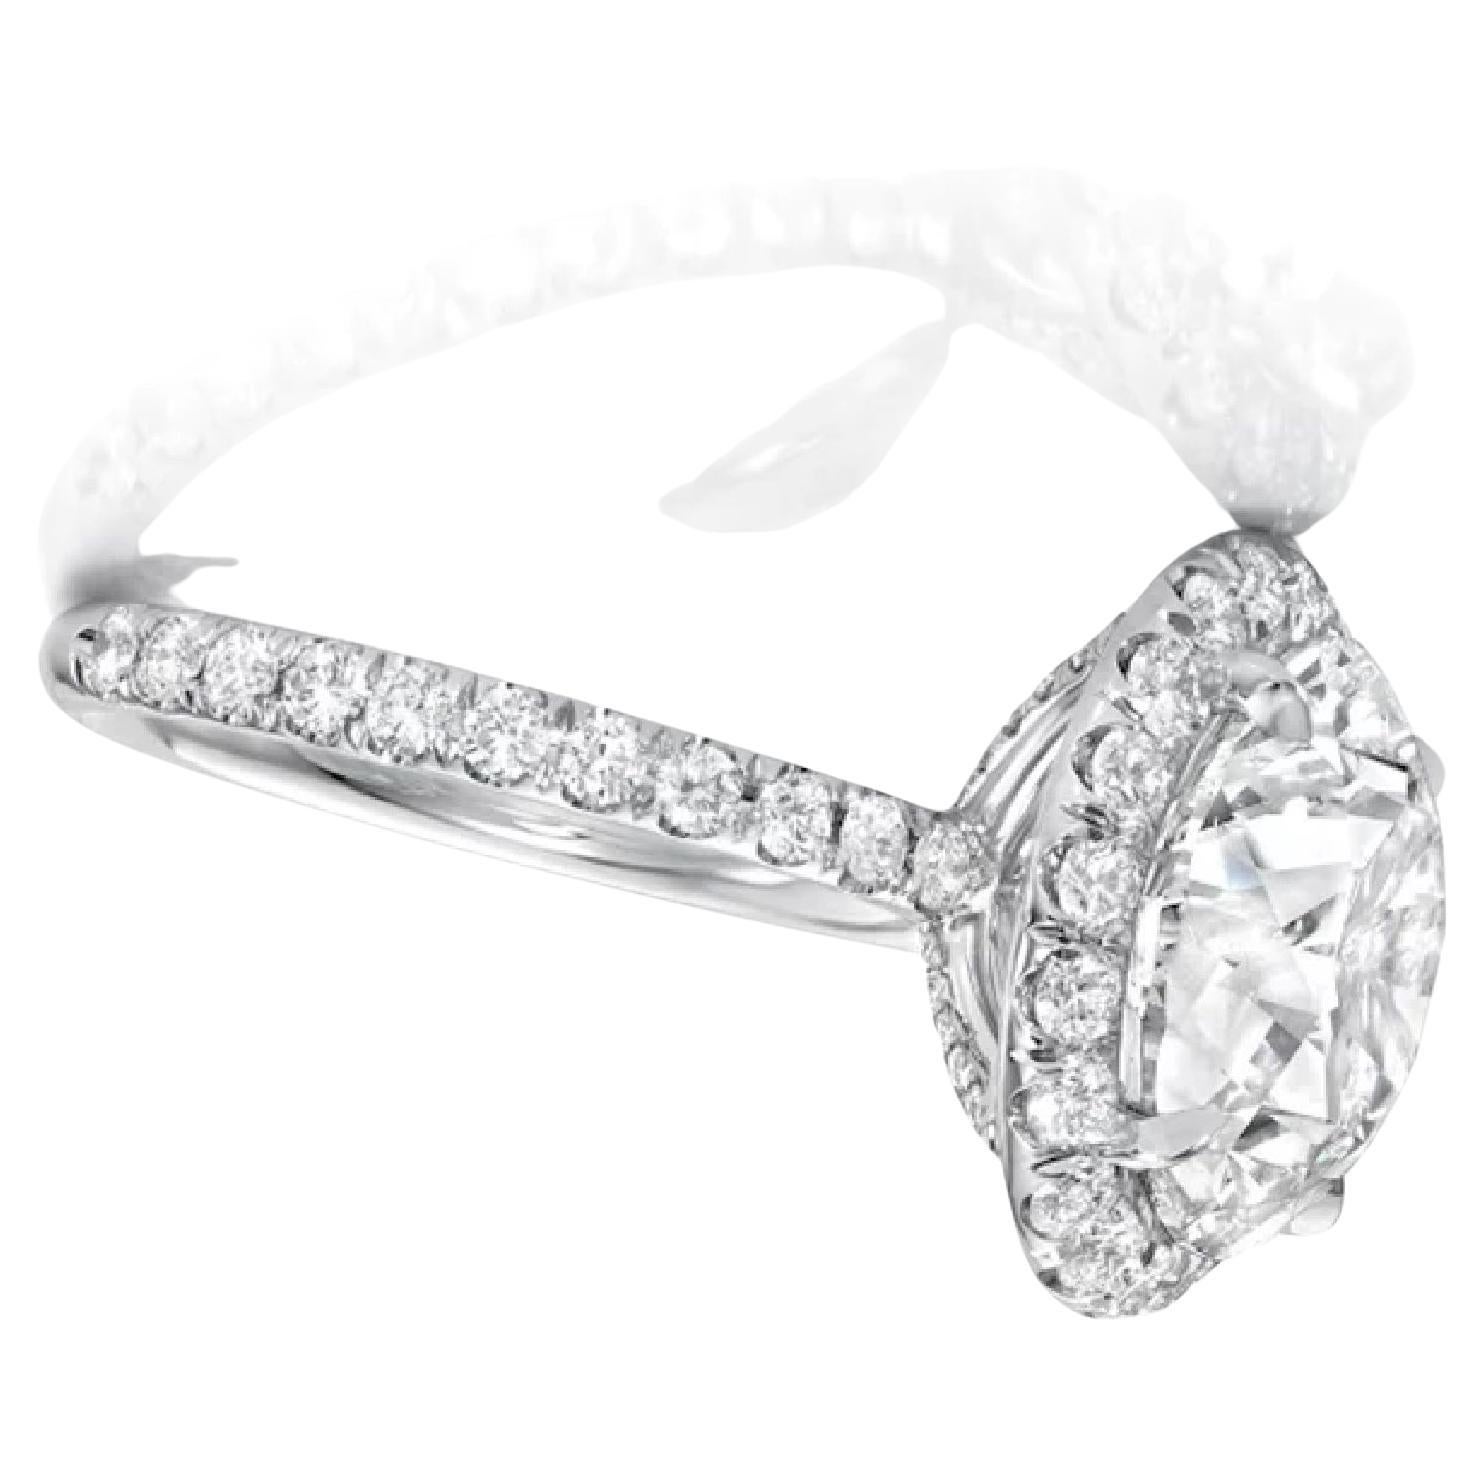 Cette bague en diamant unique est fièrement offerte par Antinori Fine Jewels.

Ce diamant de 4 carats, certifié par le GIA, de couleur G et de pureté interne irréprochable, est serti dans une bague en platine et diamant fabriquée à la main par